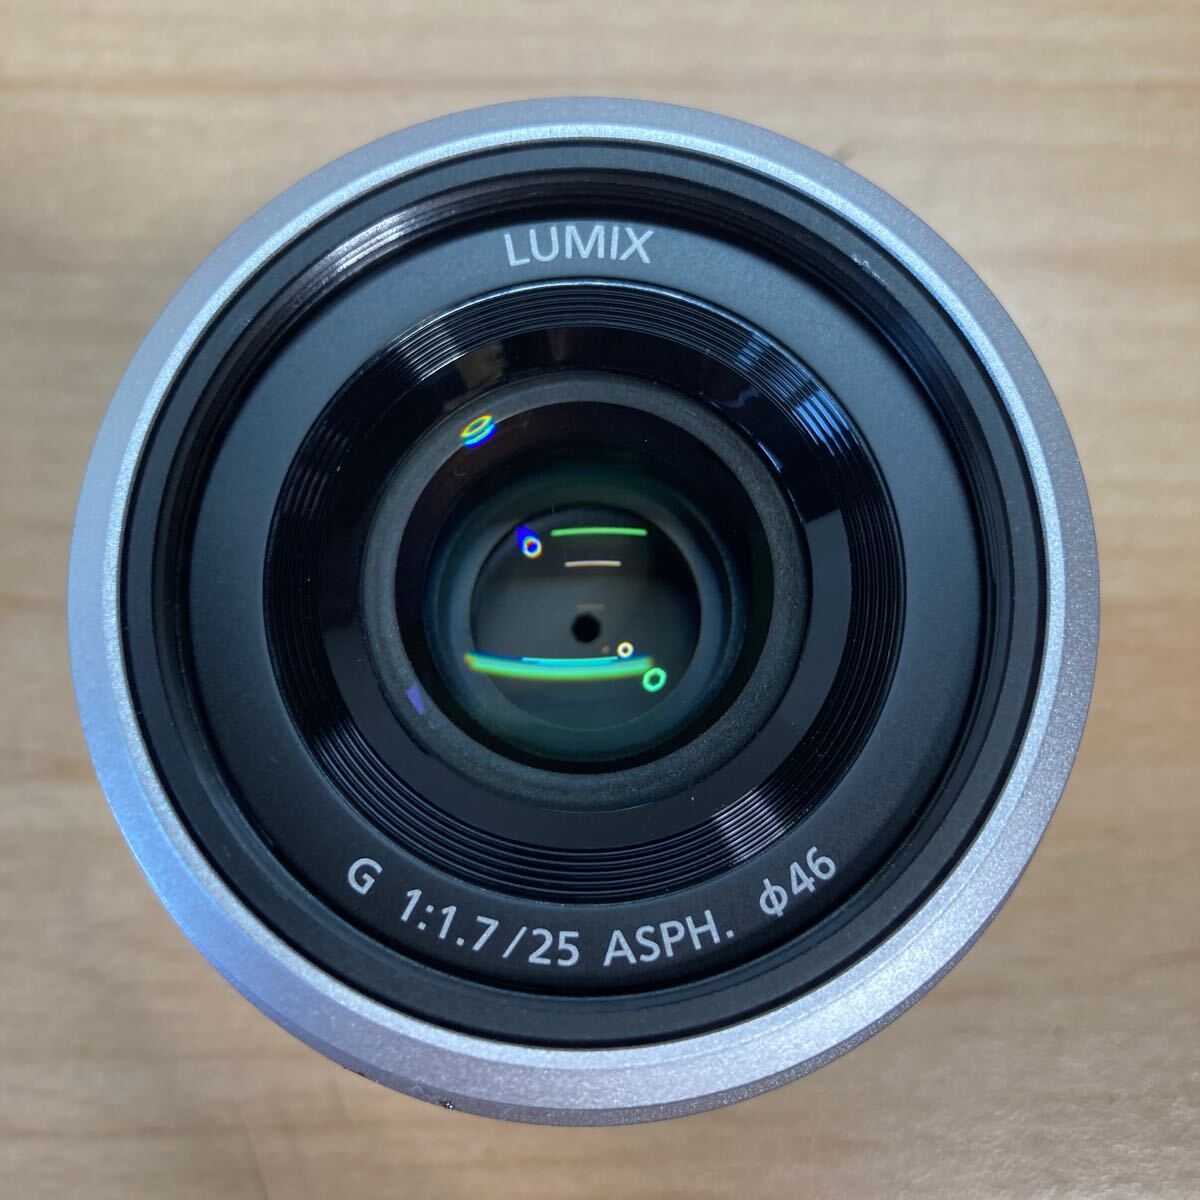 Panasonic H-H025 LUMIX G 1:1.7 25 ASPH. φ46 パナソニック ルミックス デジタル一眼カメラ用 交換レンズ (4-3)の画像2